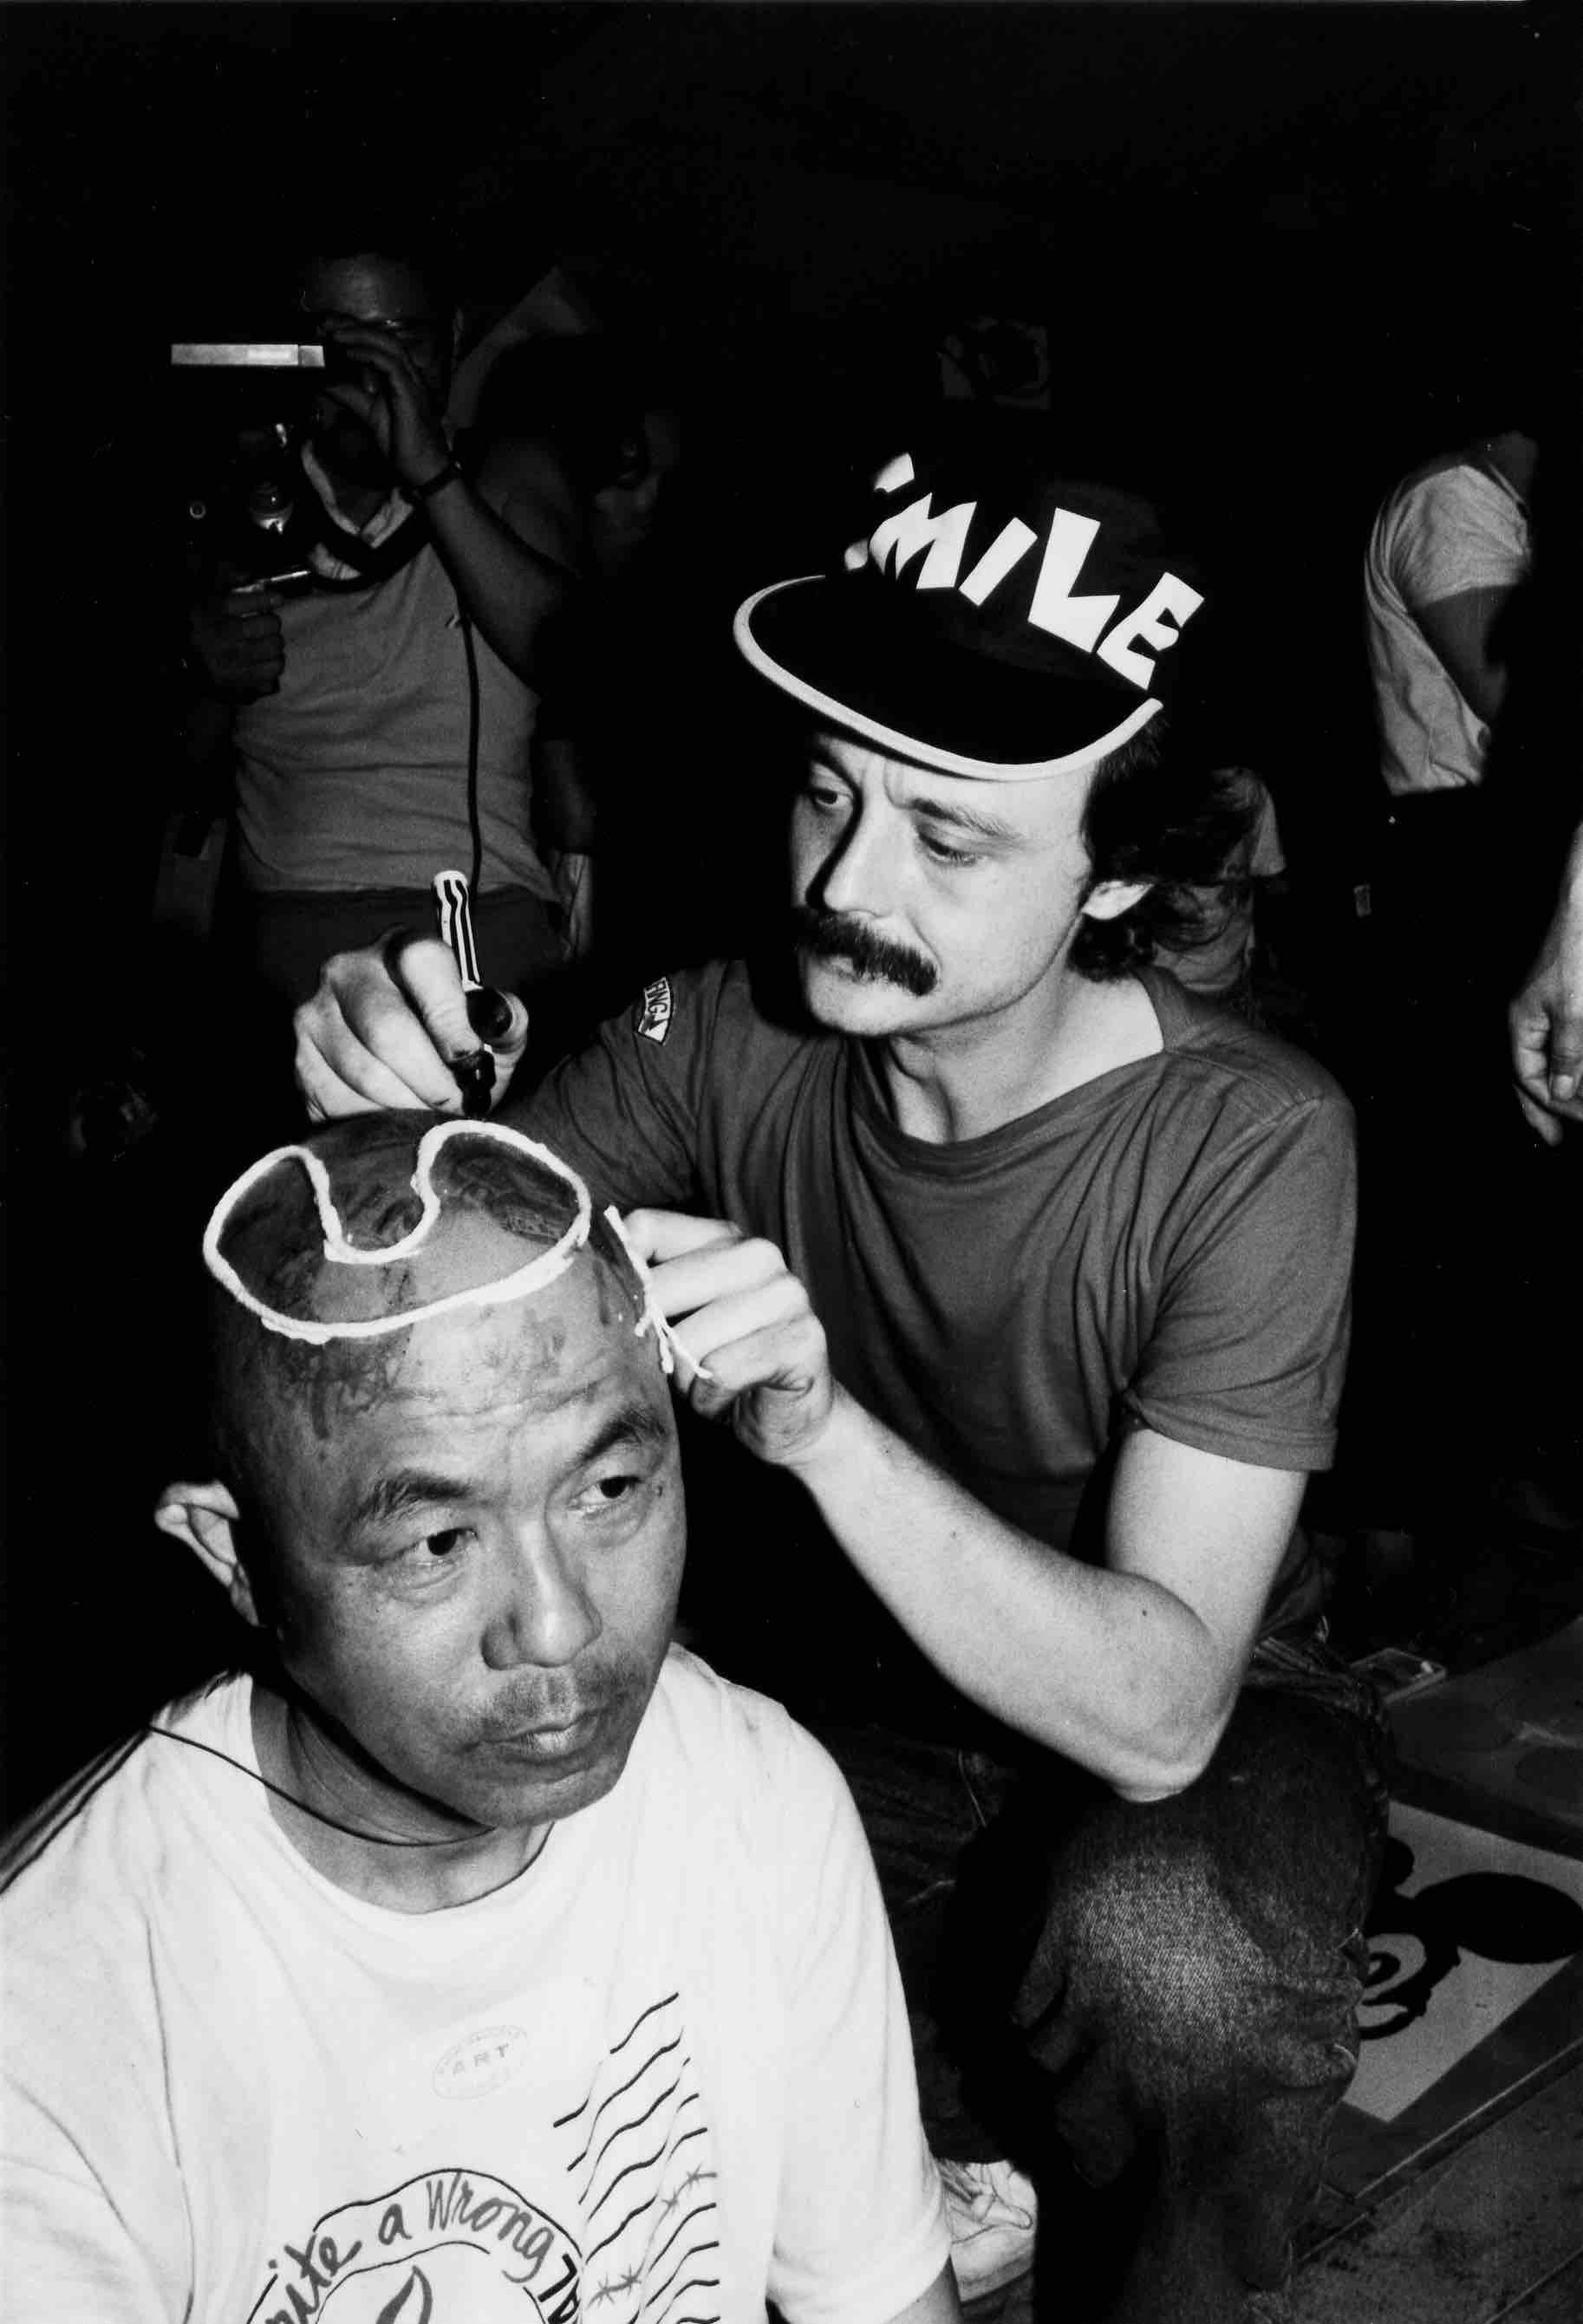 Nella foto: due uomini, uno europeo con un cappello con la scritta smile e uno giapponese che indossa una maglietta con la scritta mail art, sono seduti. Il primo scrive con un pennarello sulla testa del secondo.